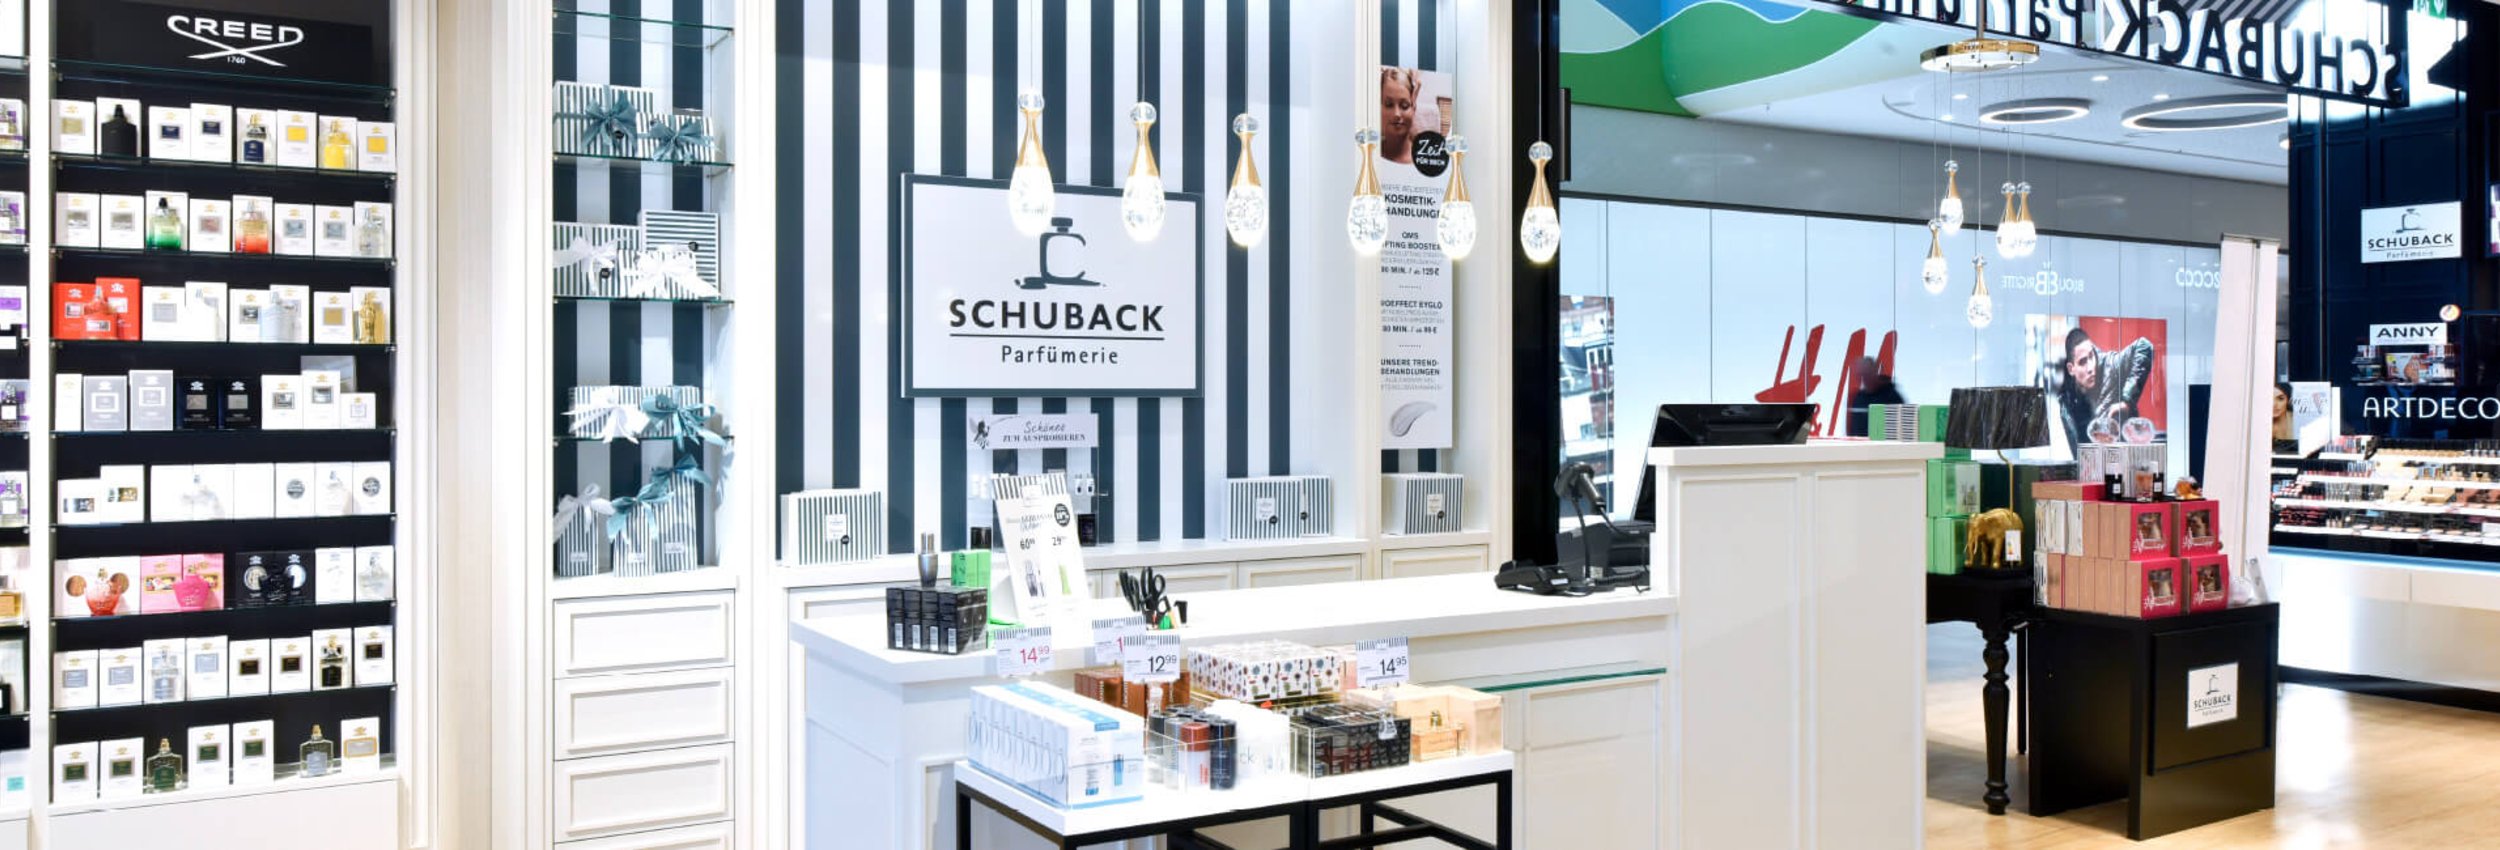 Schuback Parfümerie - Schillerplatz